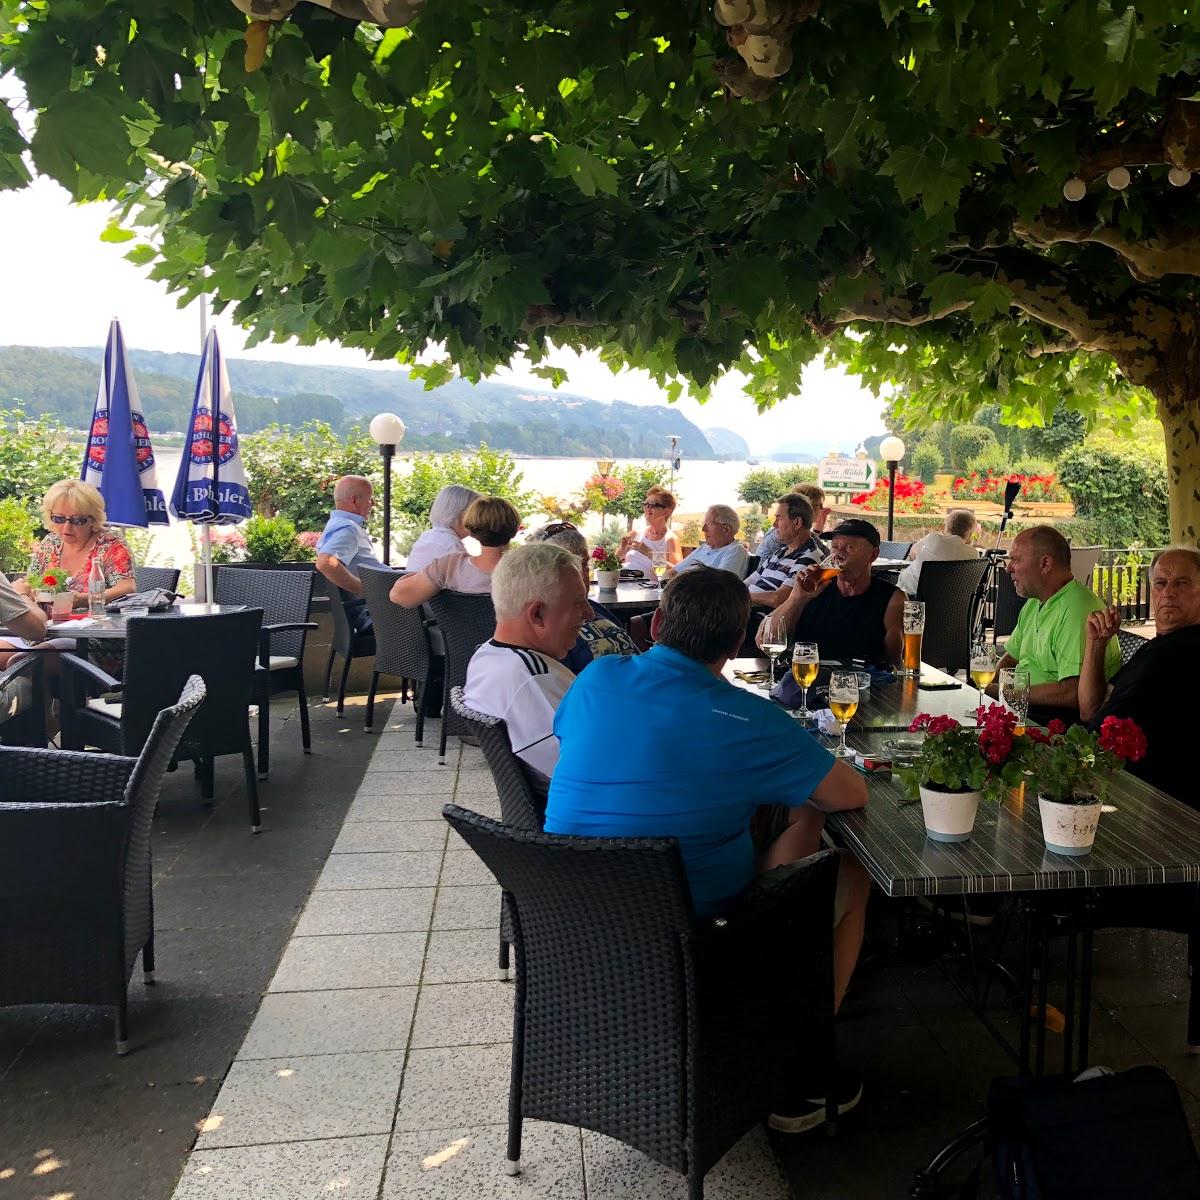 Restaurant "Restaurant Genuss am Fluss" in Bad Breisig